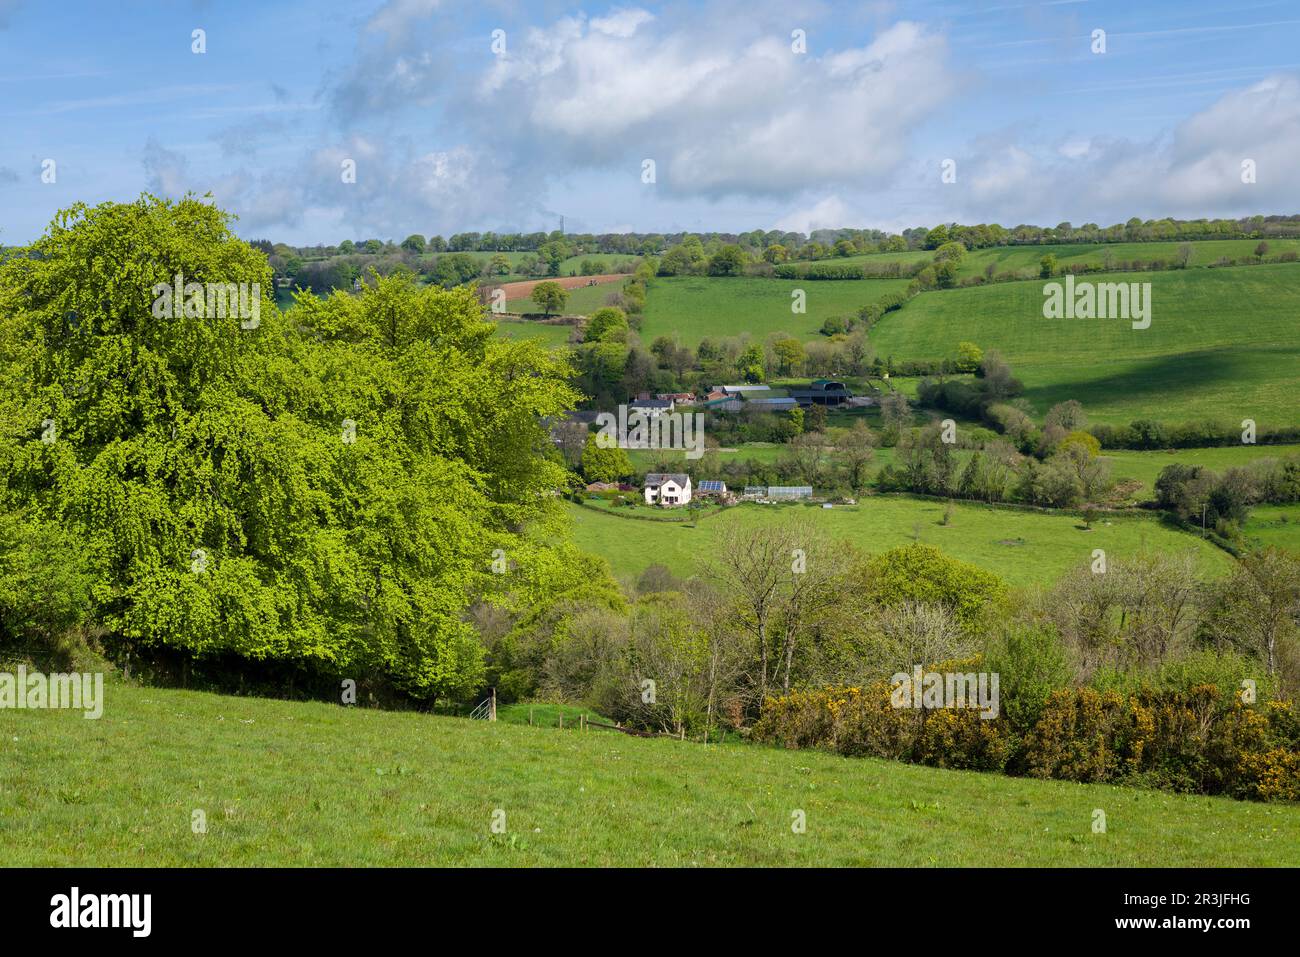 Ferme de Brown supérieur et ferme de Brown moyen près de Clatworthy dans les collines de Brendon, Somerset, Angleterre. Banque D'Images